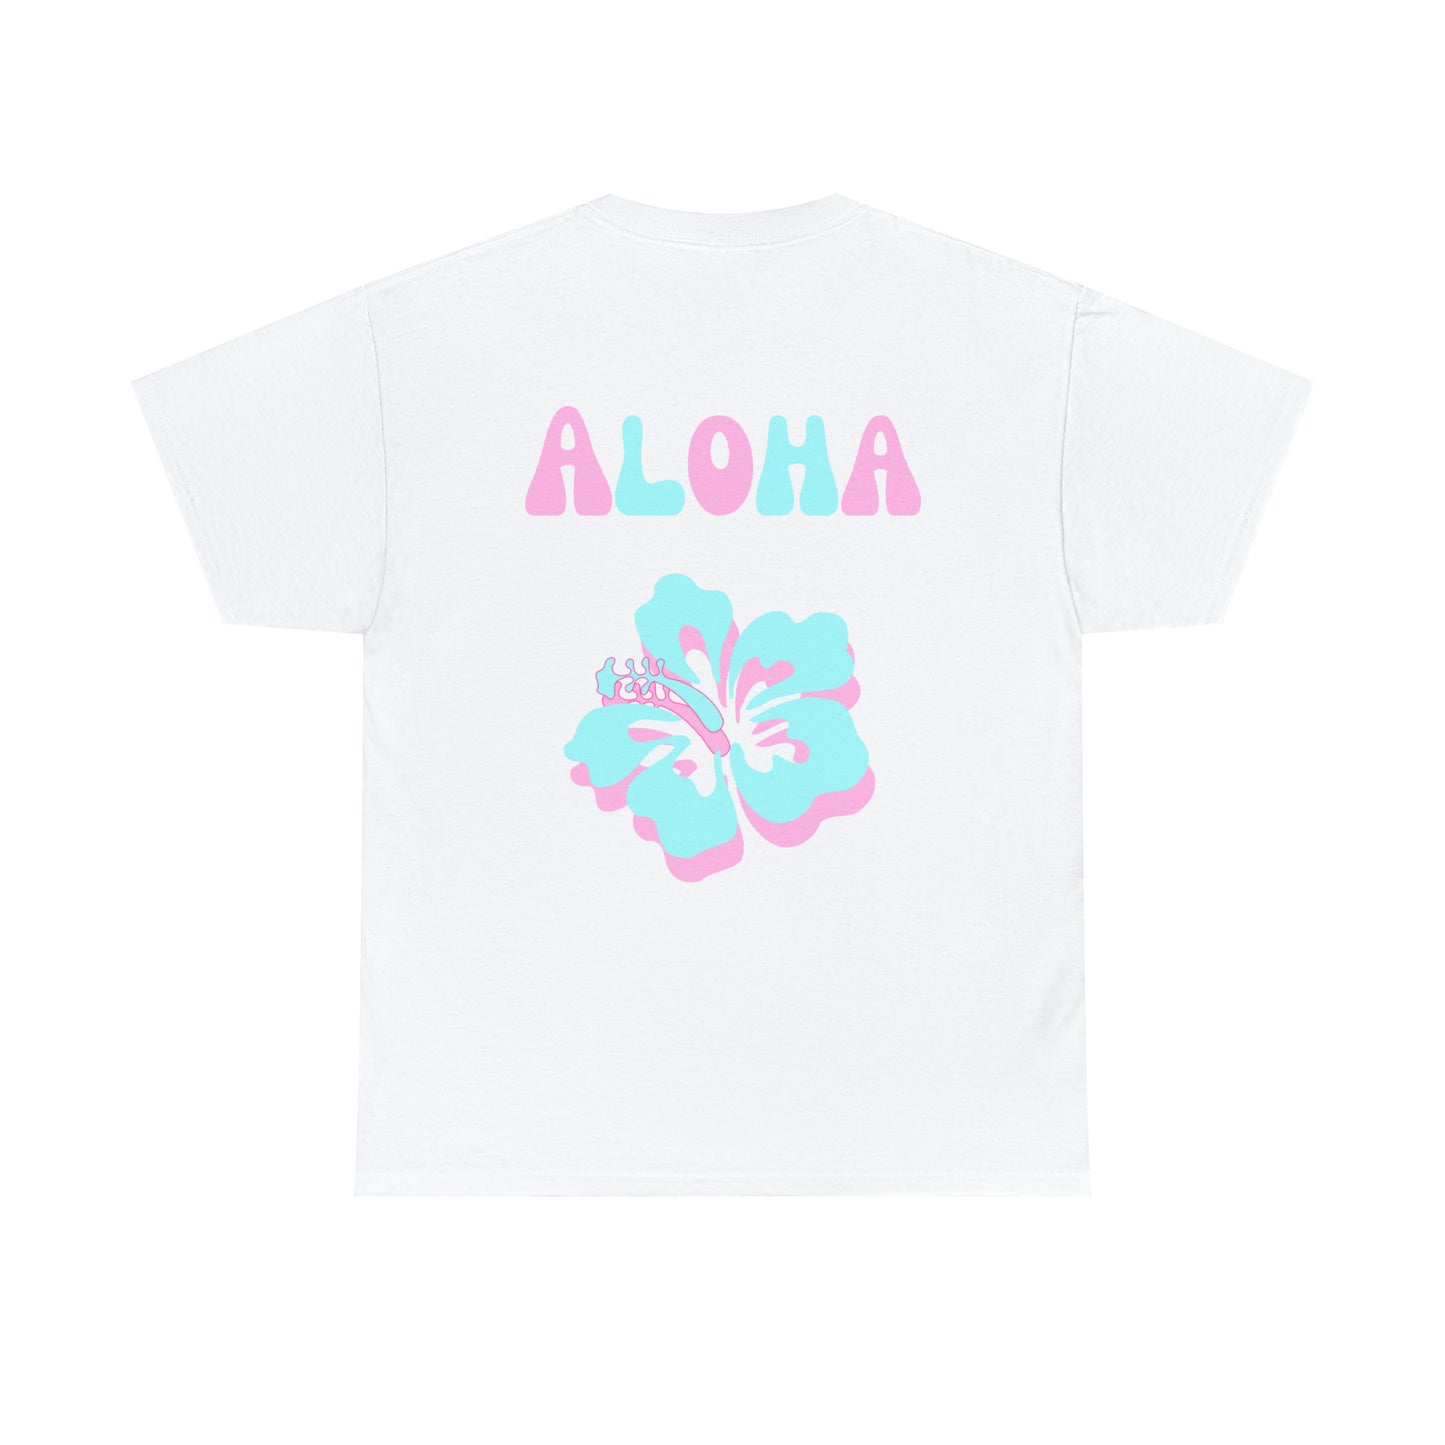 Aloha t-shirt